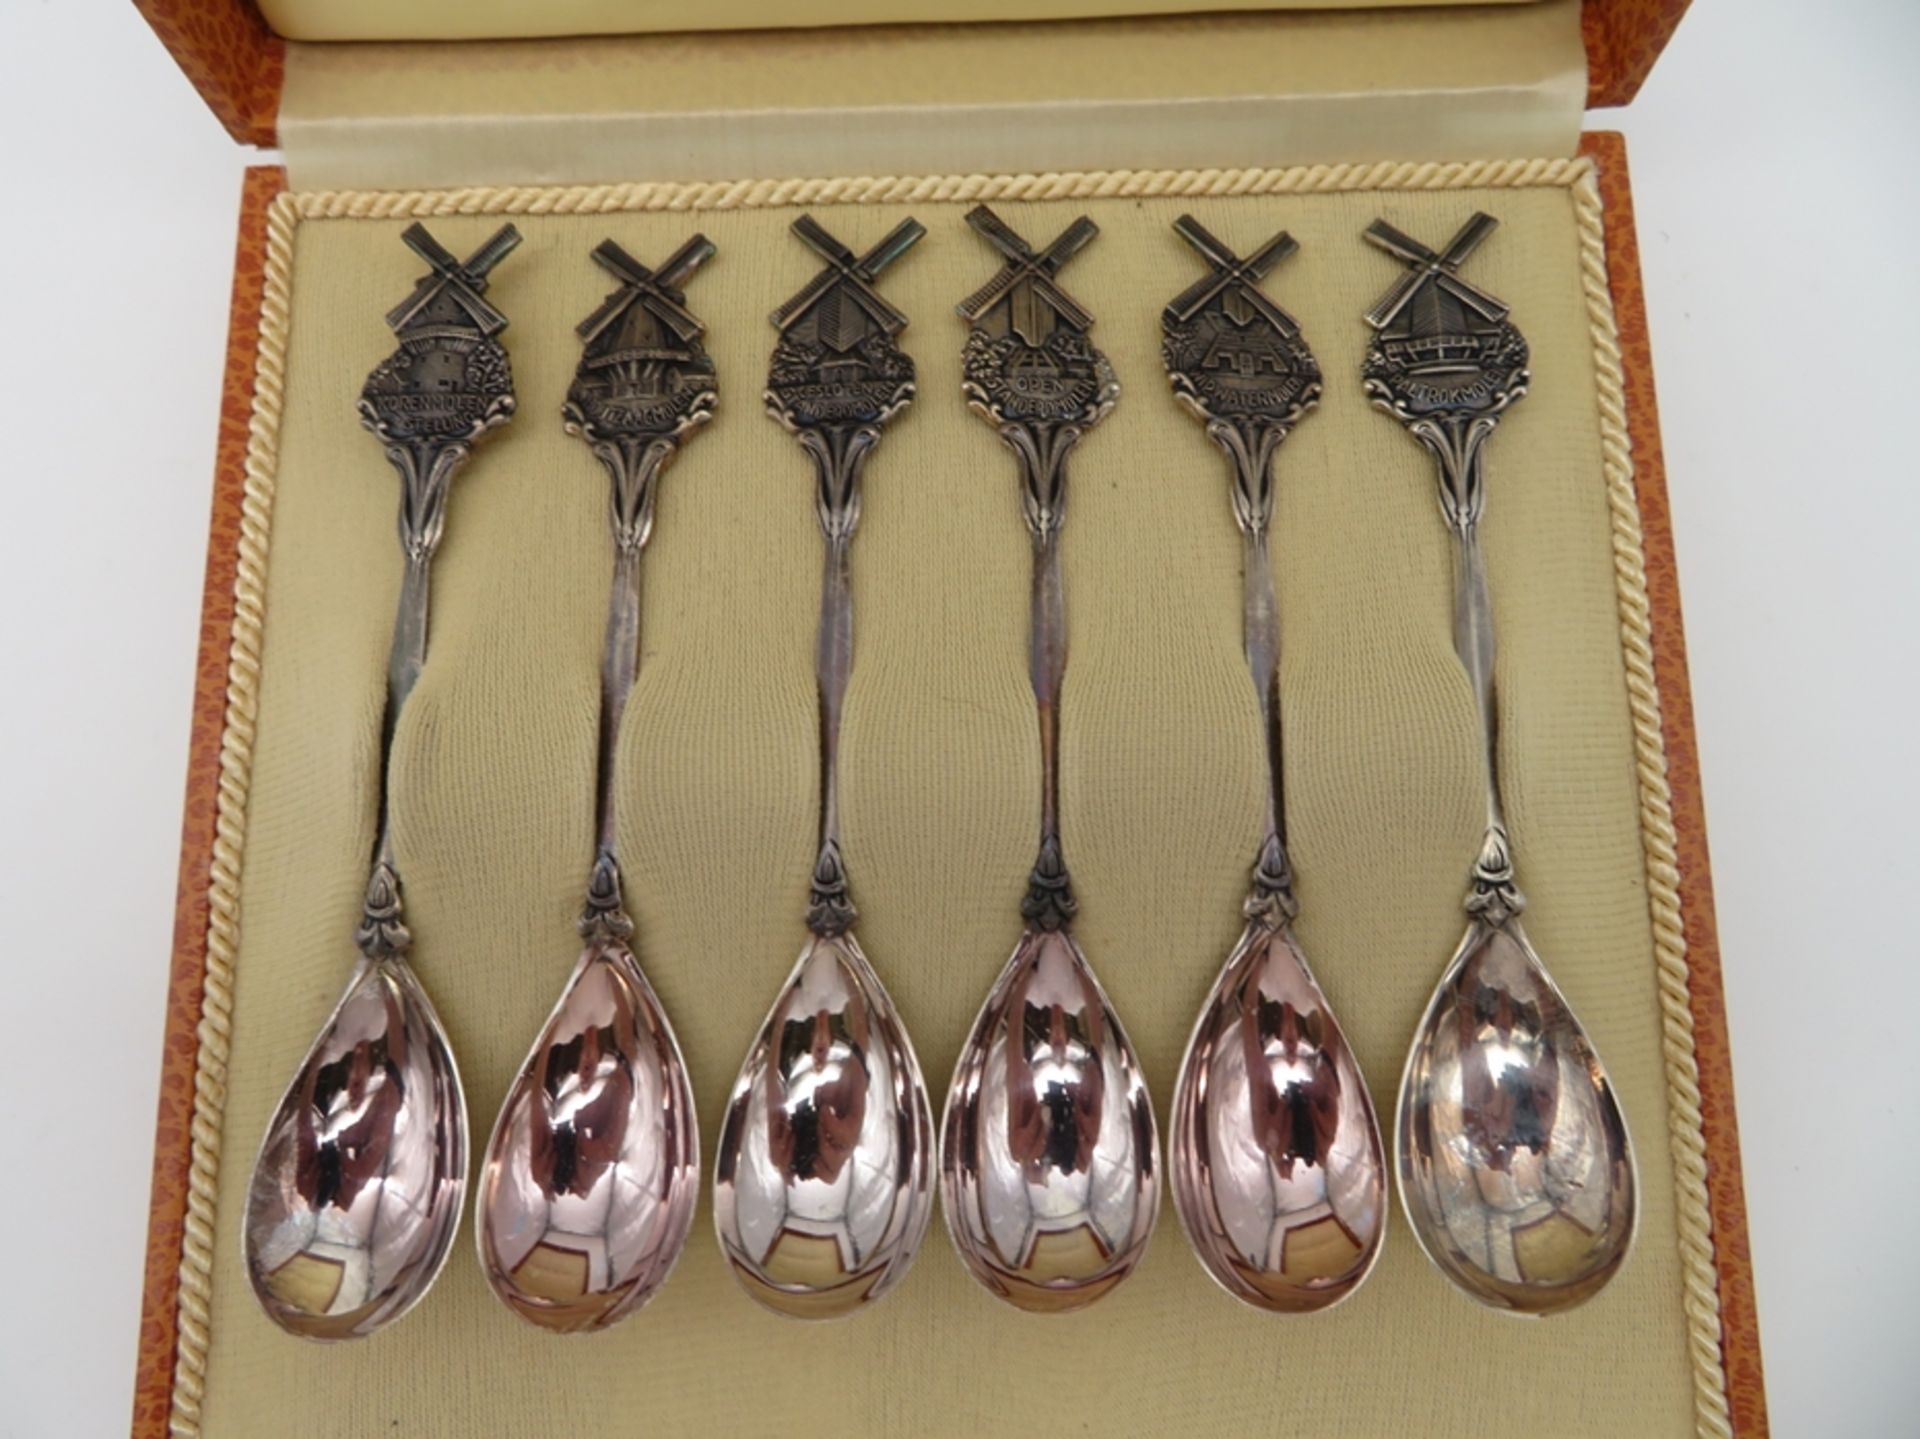 6 Teelöffel, Niederlande, Stiele mit Windmühlen, 835er Silber, gepunzt, 90 g, Etui, l 12,5 cm.